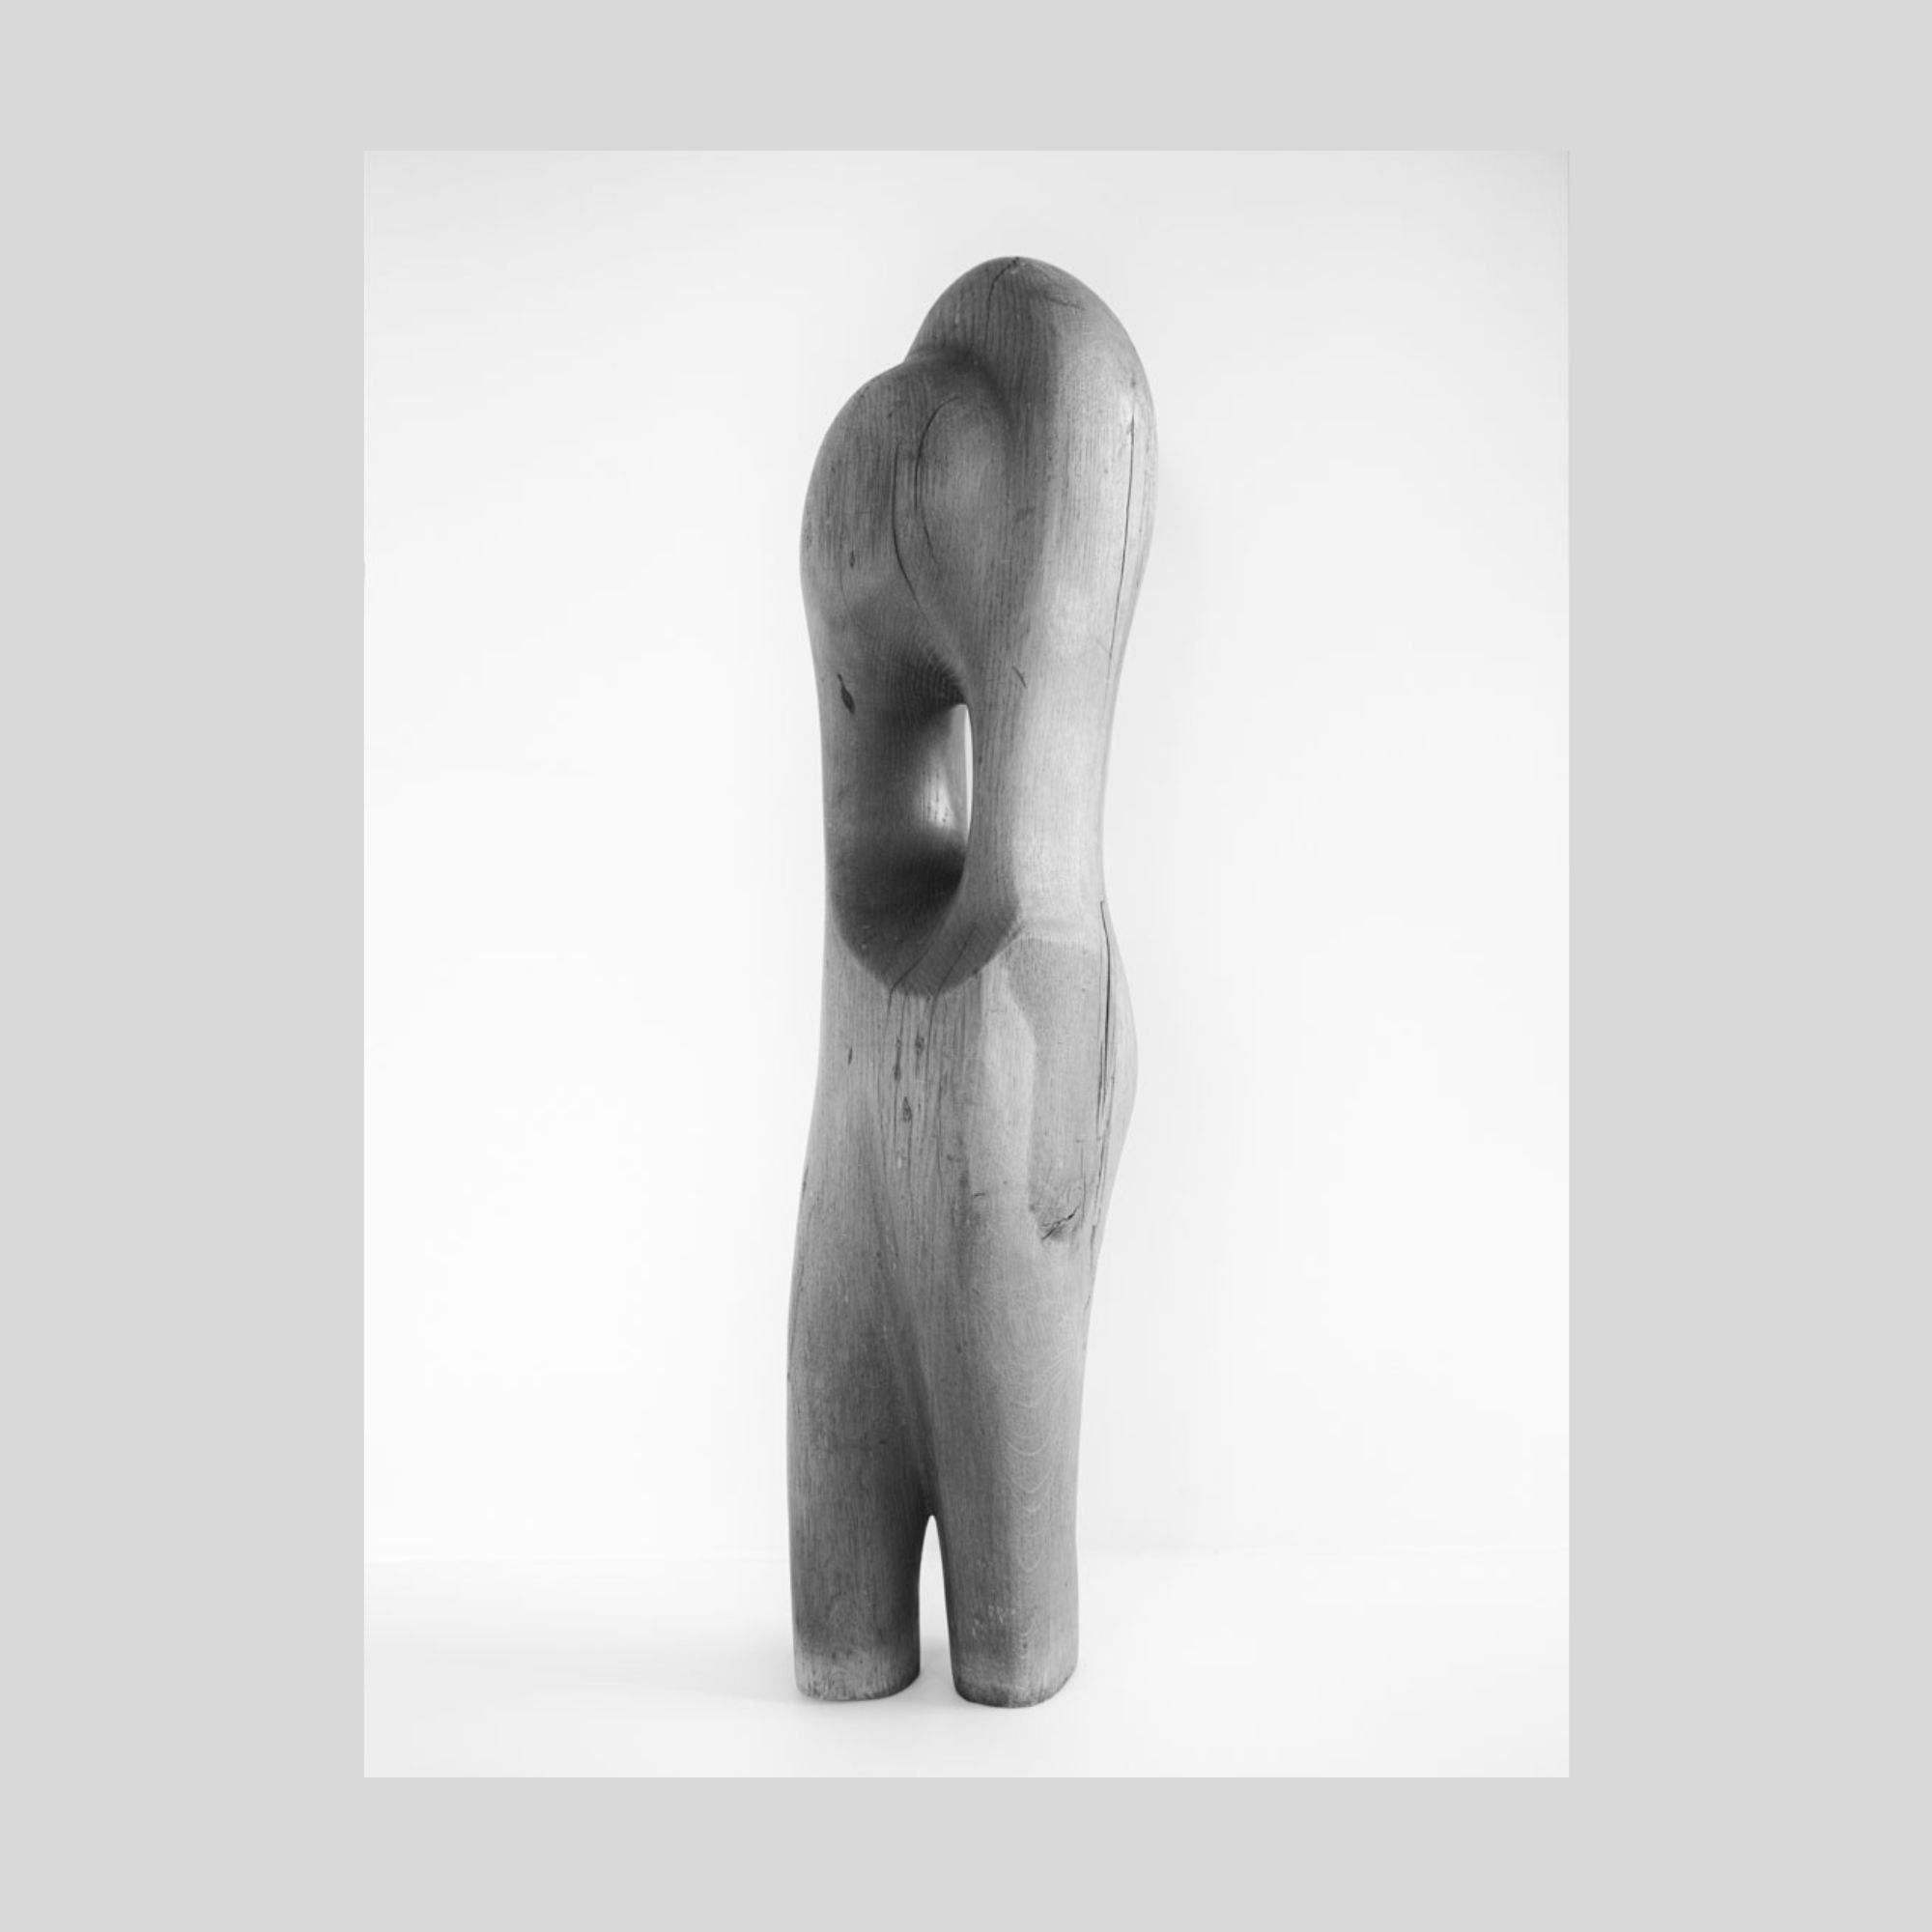 La sculpture sur bois de l'artiste contemporain Bruno Minguet